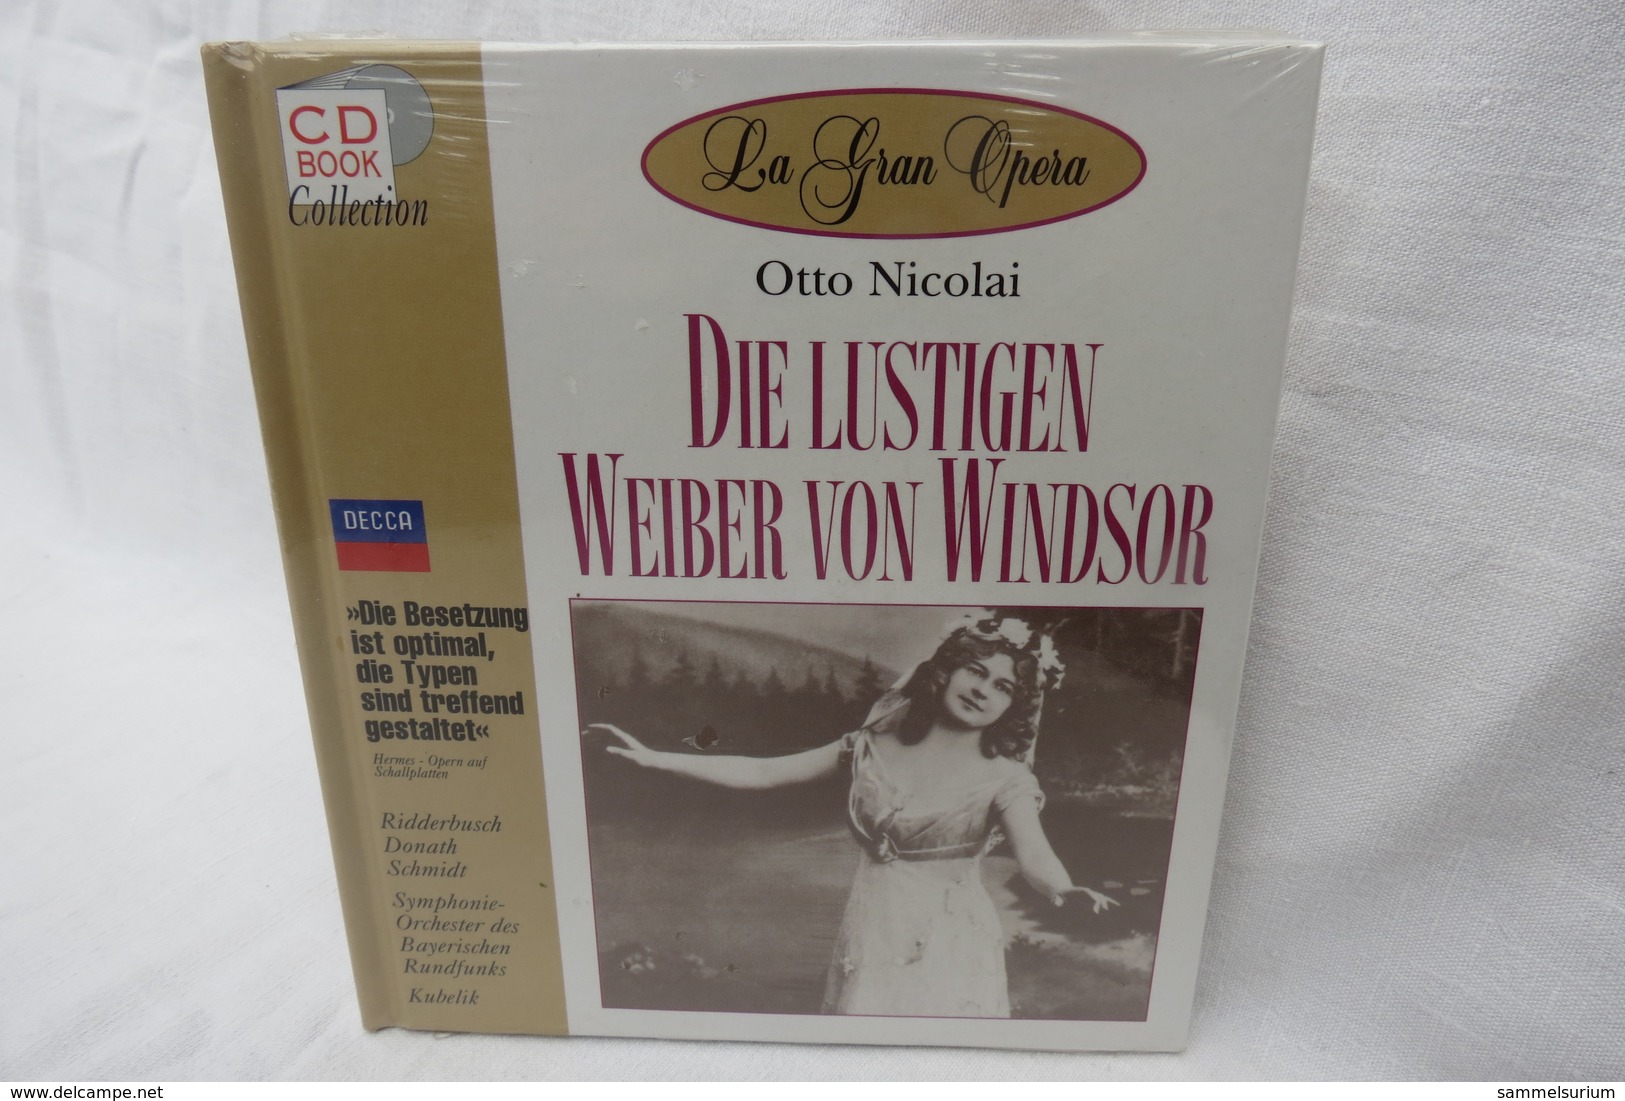 CD "Die Lustigen Weiber V.Windsor/Otto Nicolai" Mit Buch Aus Der CD Book Collection (ungeöffnet, Original Eingeschweißt) - Opera